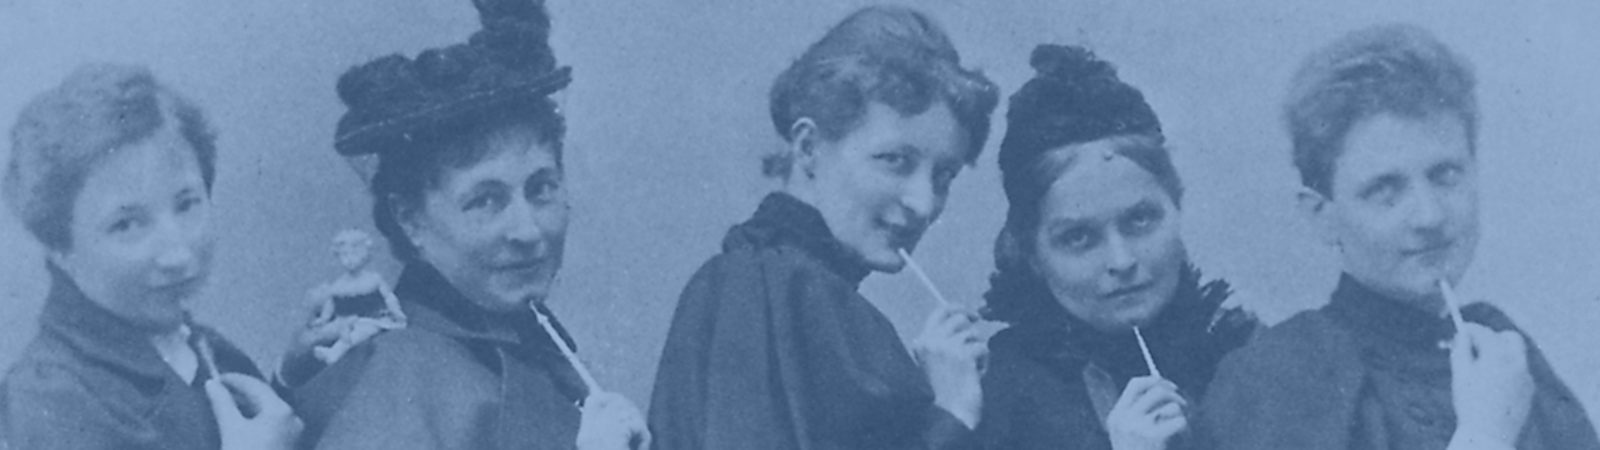 A-F1-00869; Gruppenbild von Anita Augspurg, Marie Stritt, Lily Braun, Minna Cauer und Sophia Goudstikker ca. 1894. Gemeinfrei.